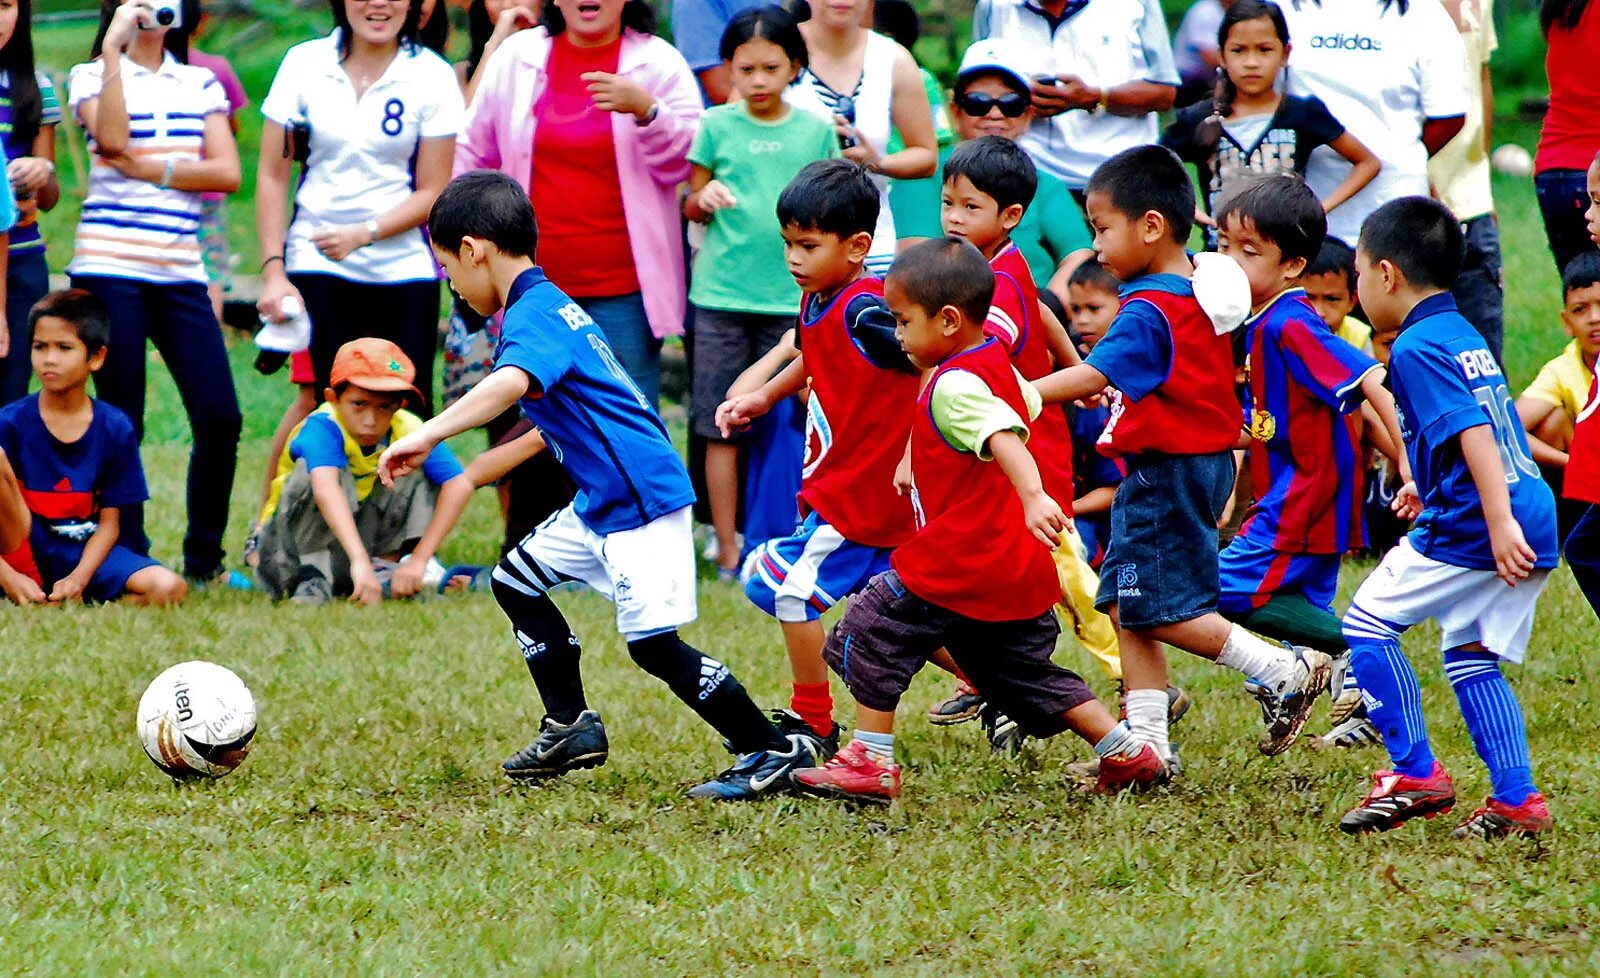 Детский футбол. Футбол дети. Футбольное поле для детей. Дети играют в футбол.